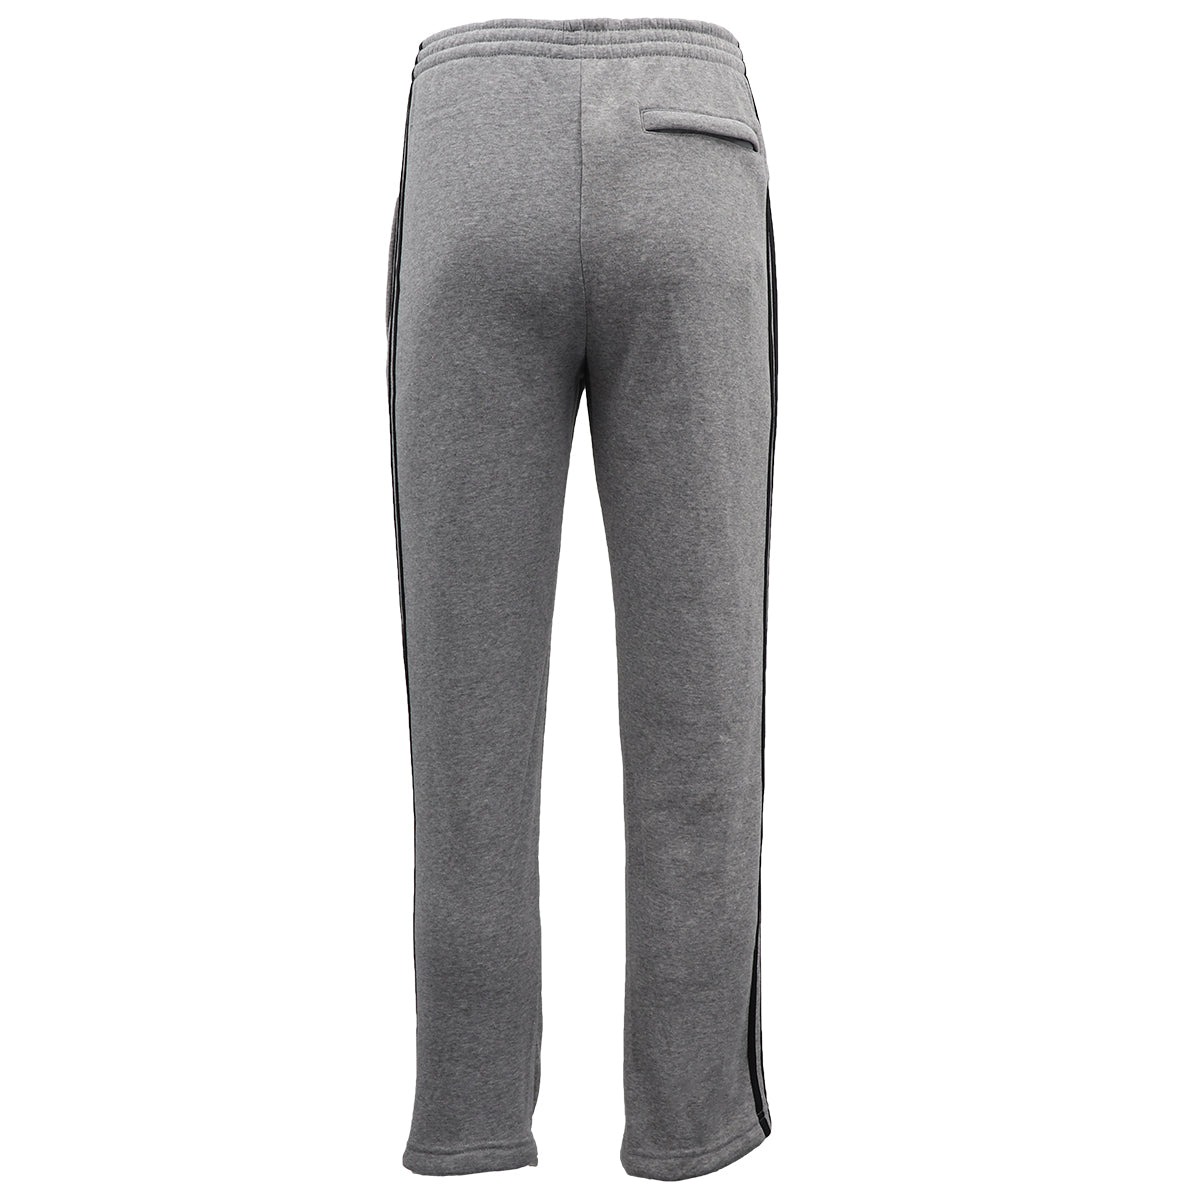 Men's Fleece Casual Sports Track Pants w Zip Pocket Striped Sweat Trousers S-6XL, Grey, 3XL